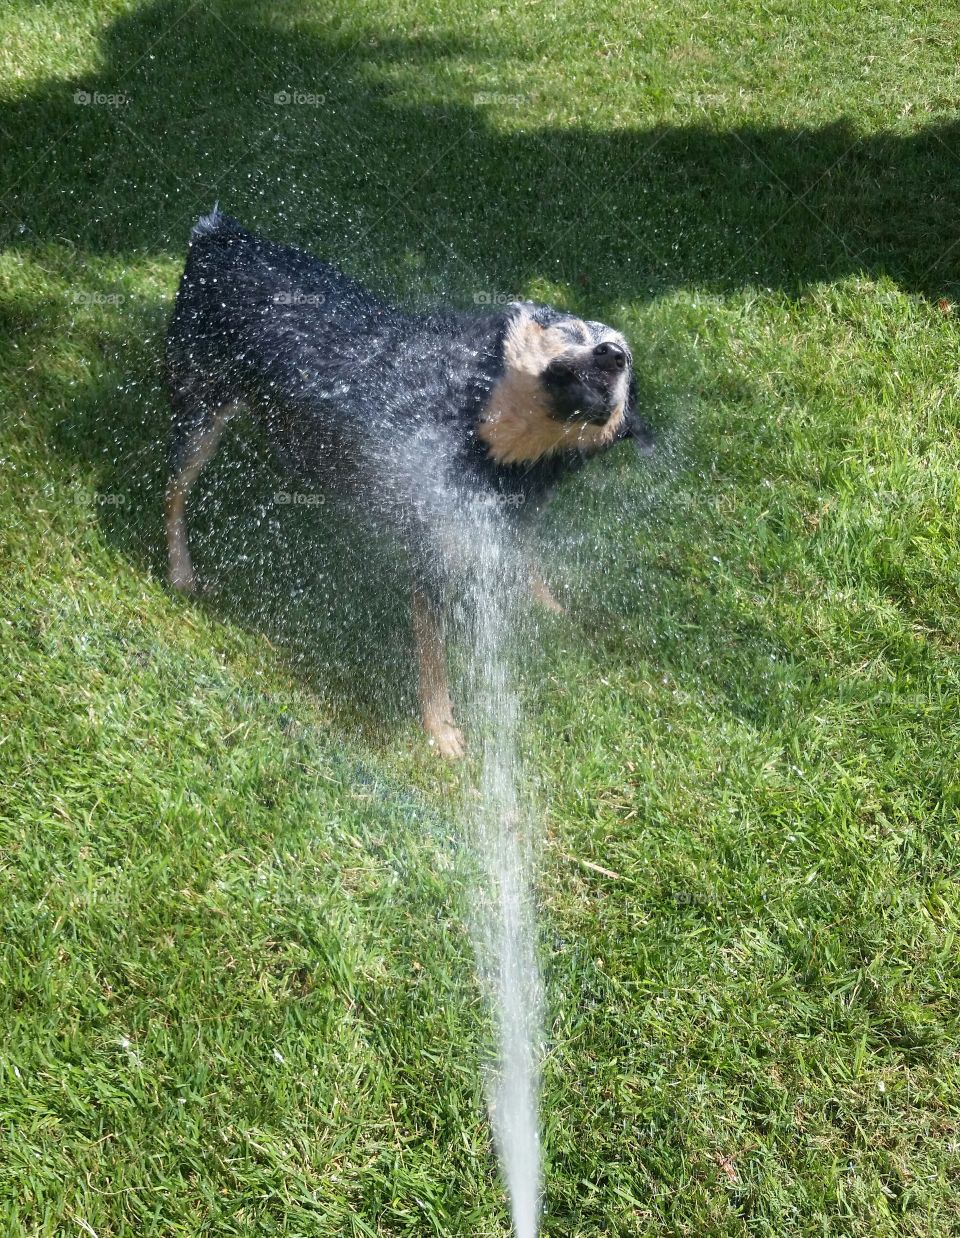 Water spraying on dog at grassy field